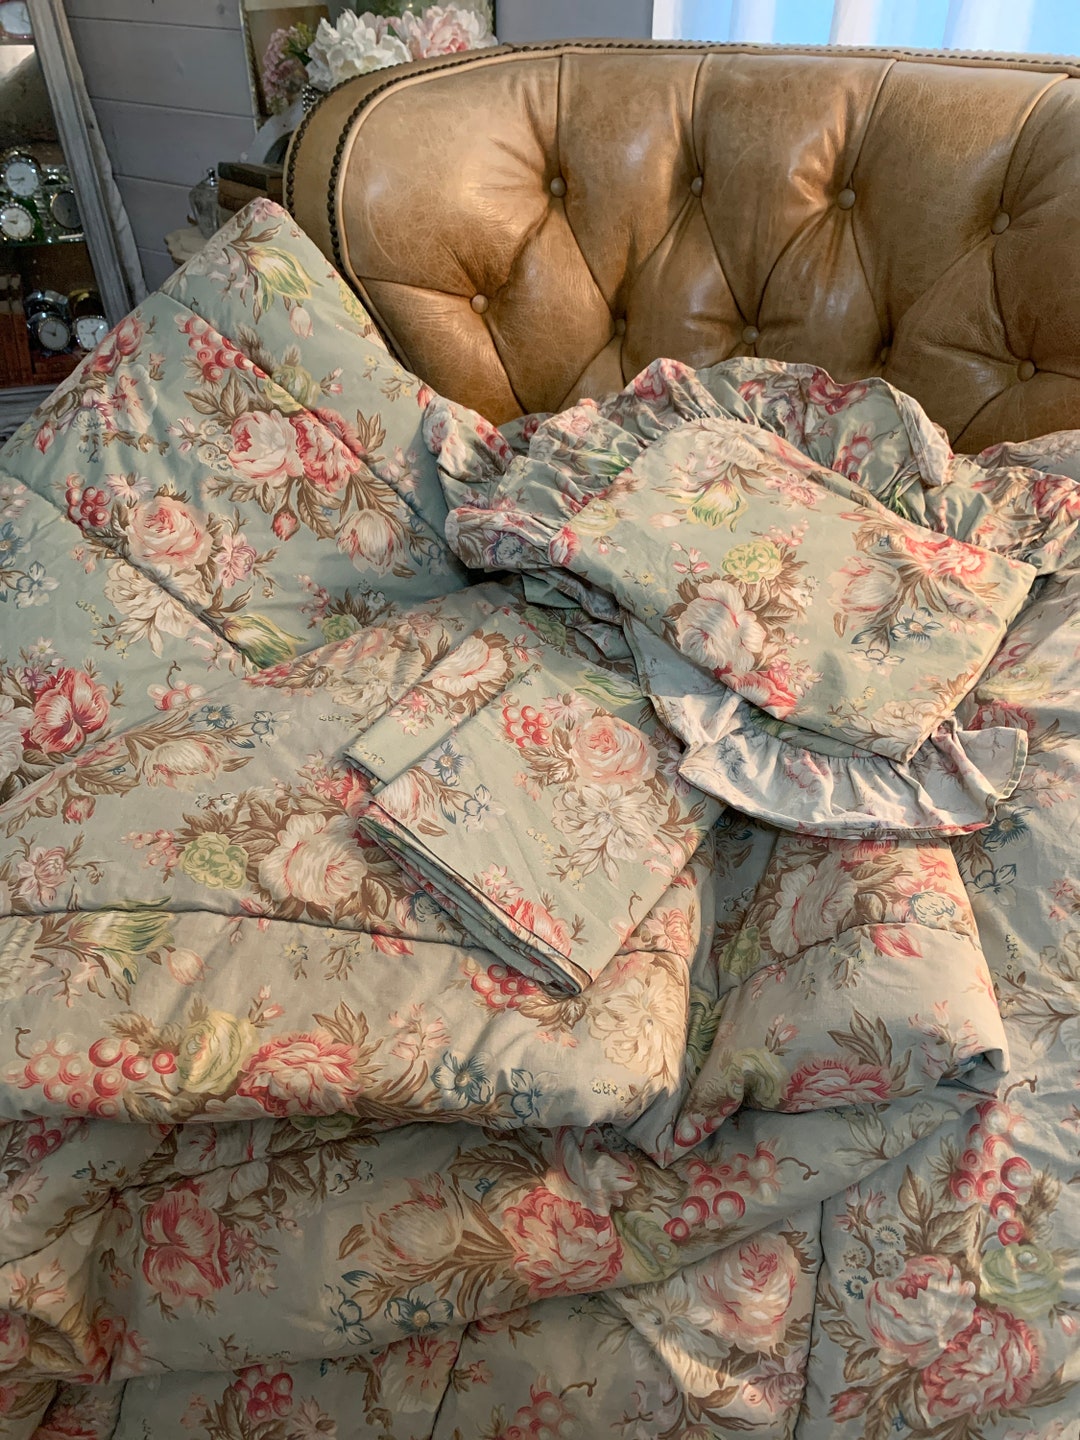 A Bedding Refresh with Lauren Ralph Lauren Home